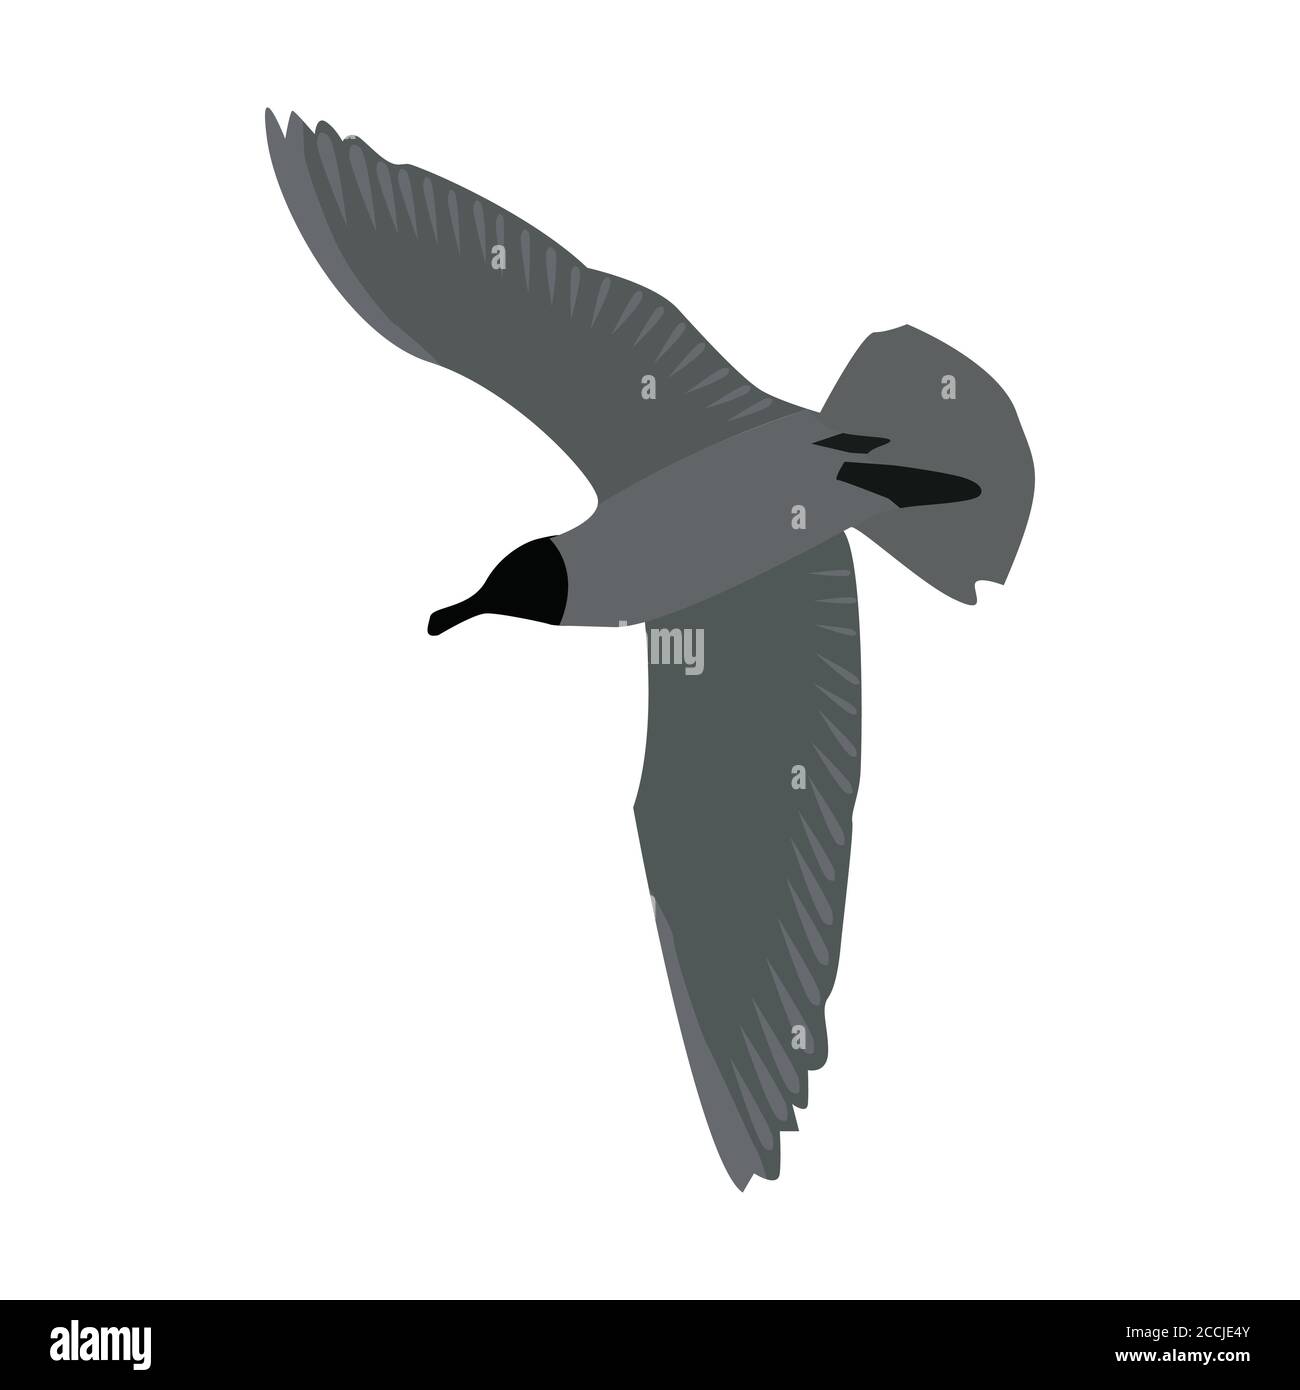 Vista dal basso di un gabbiano volante con ali sparse isolate su bianco. Uccello tern volante. Colori grigi. Vettore EPS10. Illustrazione Vettoriale